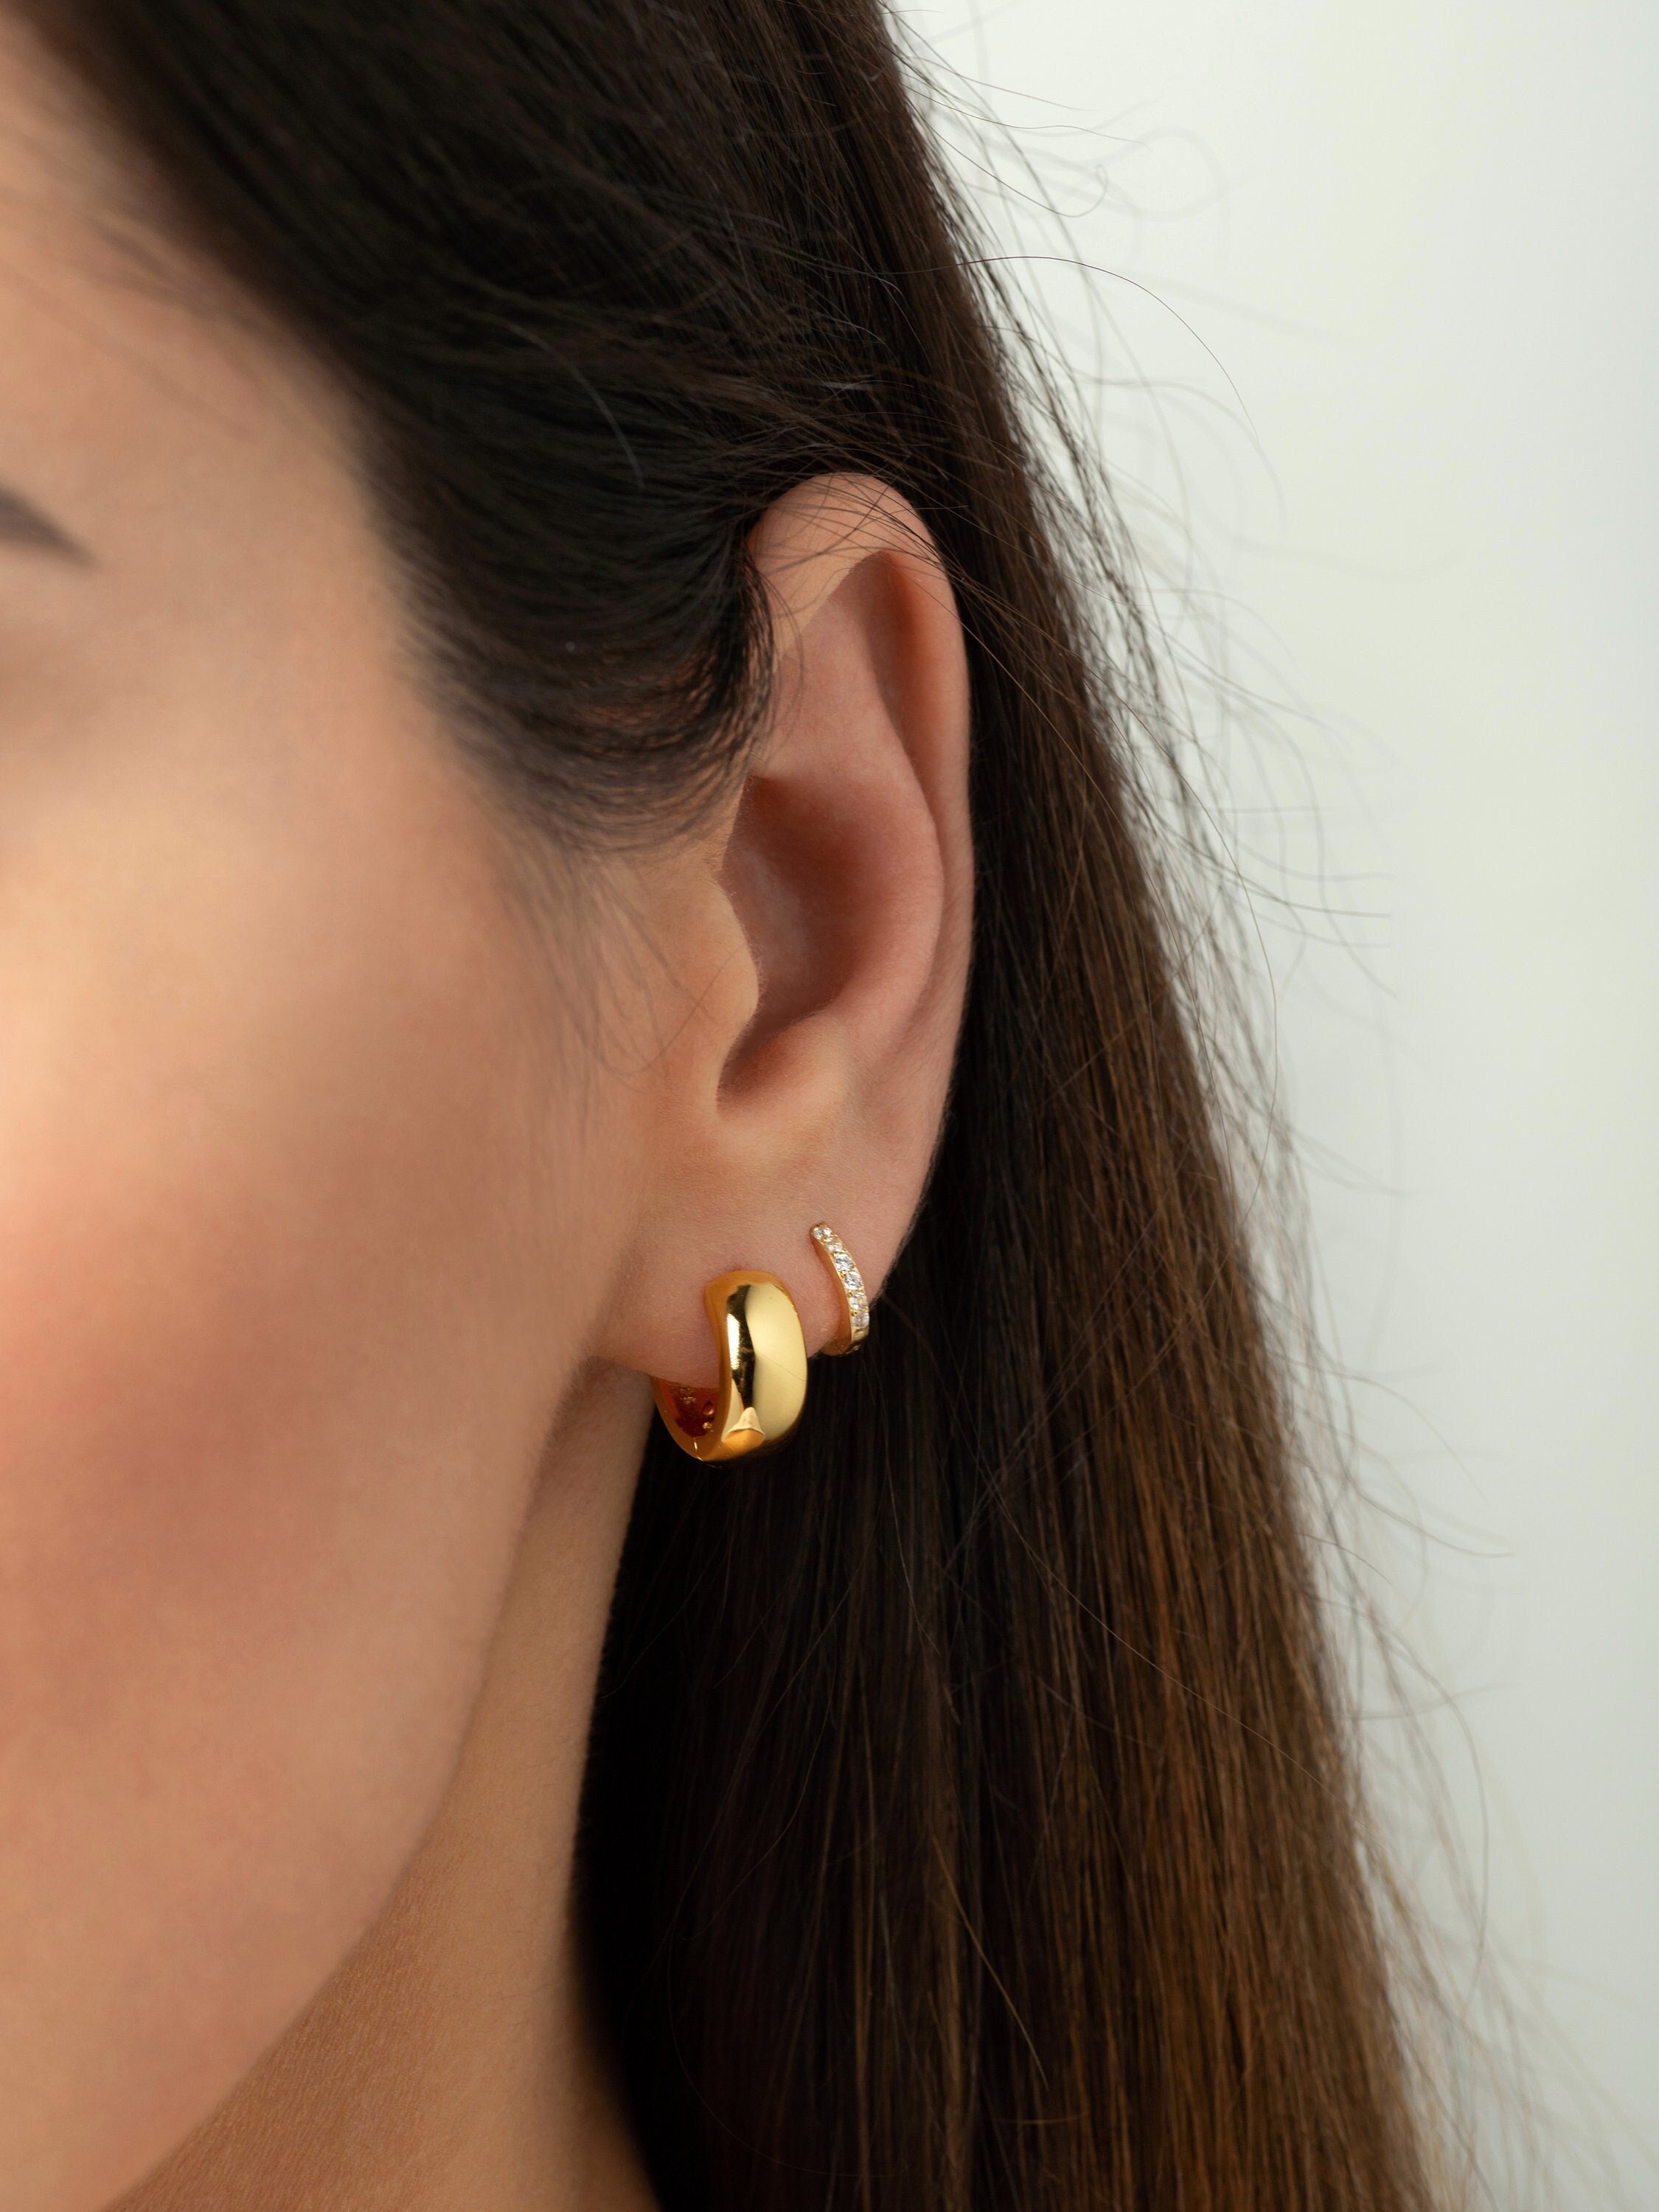 Big Thick Hoop Earrings Women | Big Thick Hoop Earrings 70mm | Hoop Earrings  Big Wide - Hoop Earrings - Aliexpress